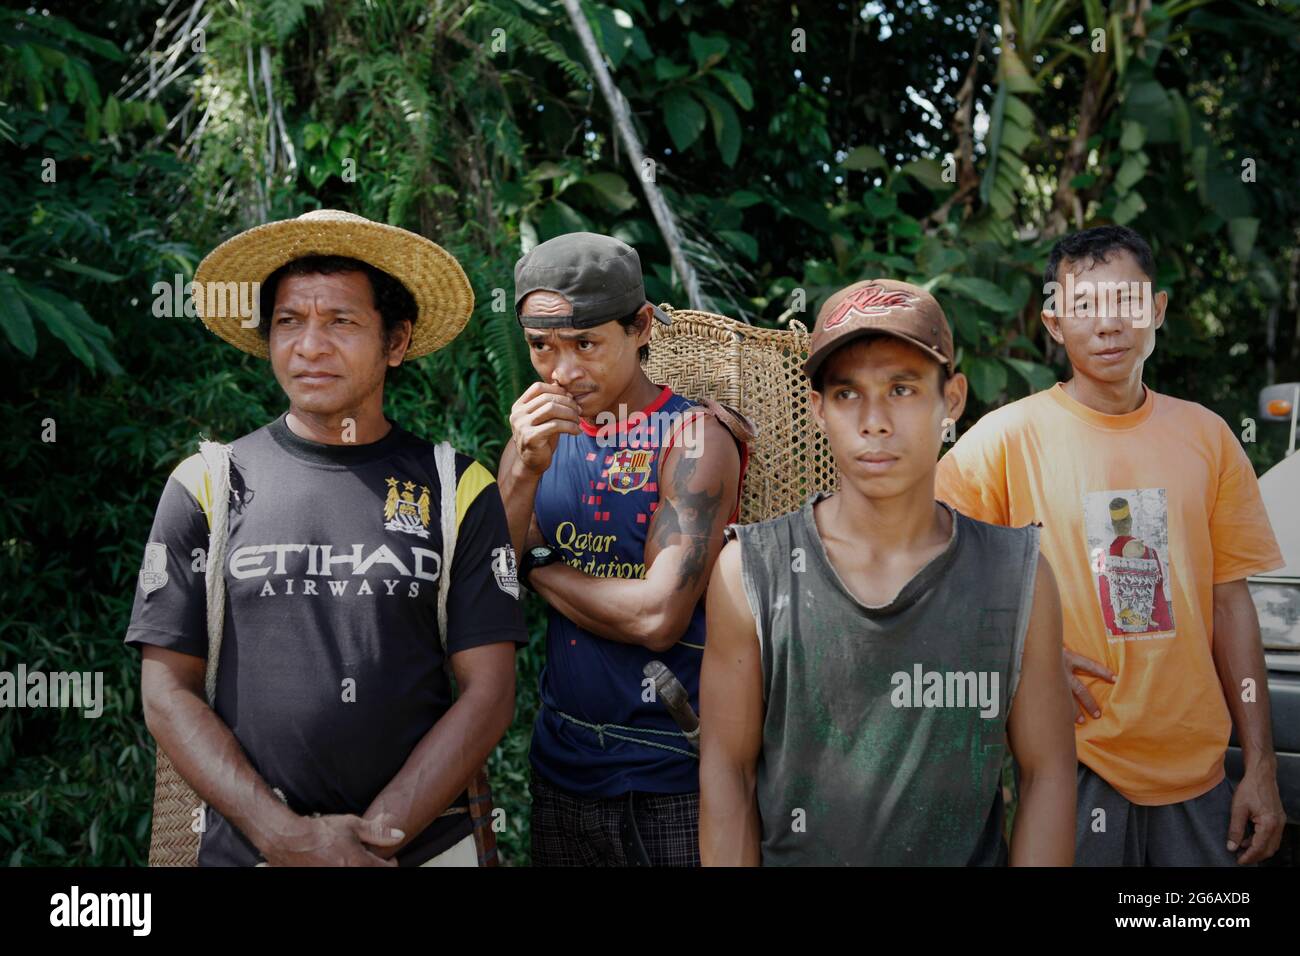 Sie haben bereits einen schlechten Zugang zur Gesundheitsversorgung, deutlich höhere Raten übertragbarer und nicht übertragbarer Krankheiten, fehlenden Zugang zu grundlegenden Dienstleistungen, Sanitäreinrichtungen und andere wichtige Präventivmaßnahmen zu spüren; Laut dem Wirtschafts- und Sozialministerium der Vereinten Nationen stehen die indigenen Völker weltweit vor einer ernsten Gesundheitsbedrohung, die durch die Covid-19-Pandemie ausgeht. Hier ist eine Gruppe von Männern der traditionellen Dayak IBAN Gemeinde in Sungai Utik, West Kalimantan, Indonesien. Stockfoto